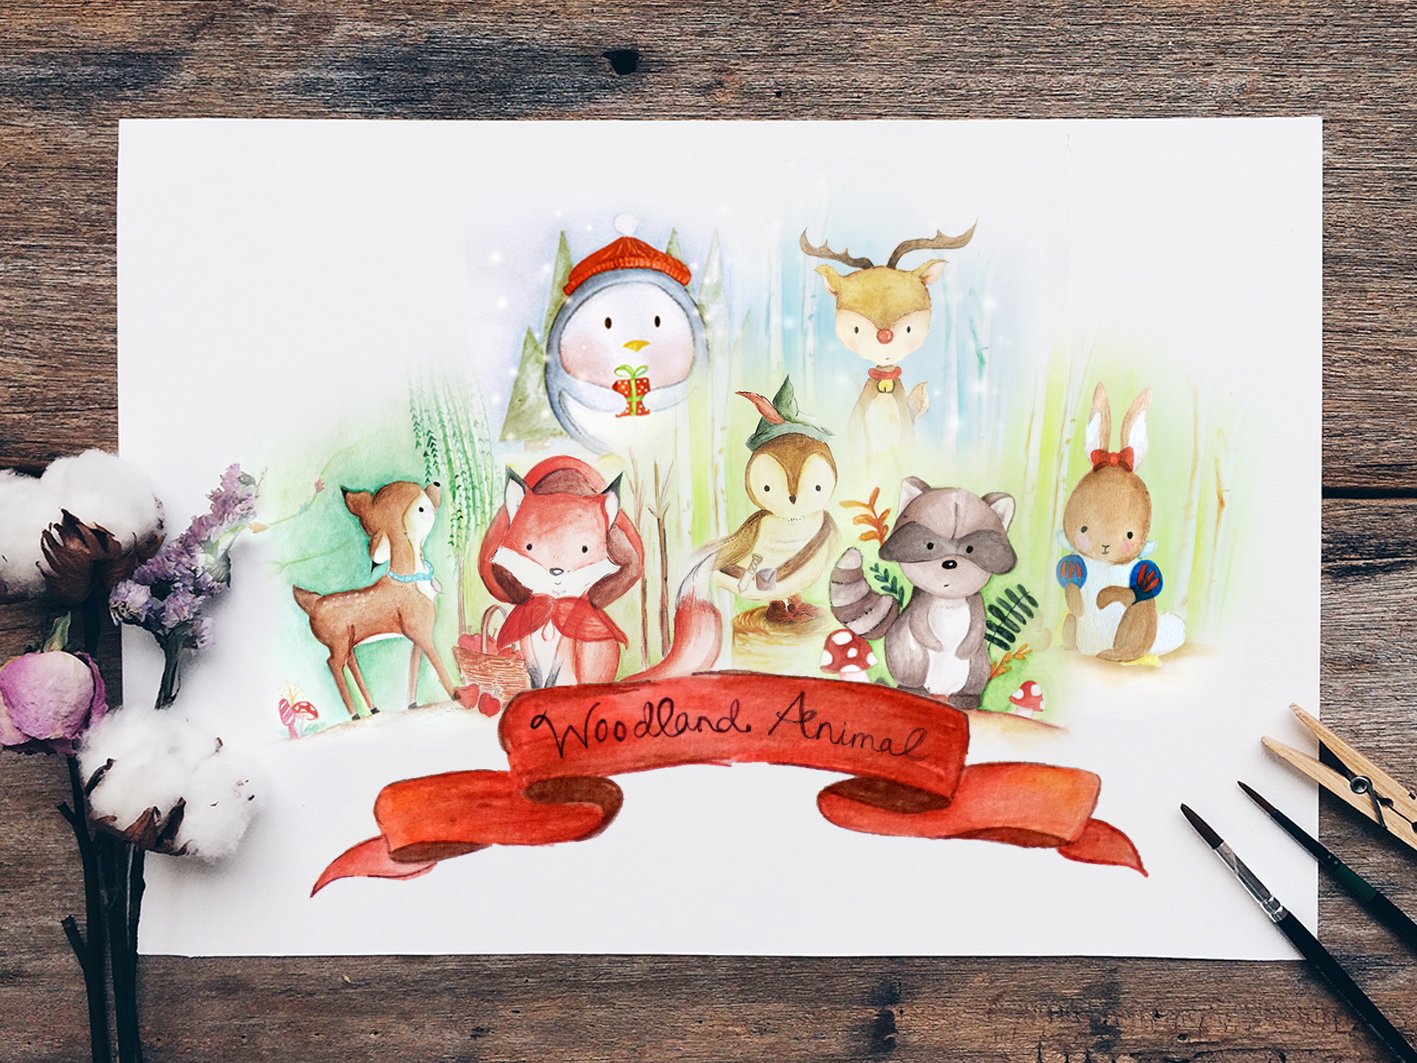 Woodland Animals Nursery Bundle cover image.